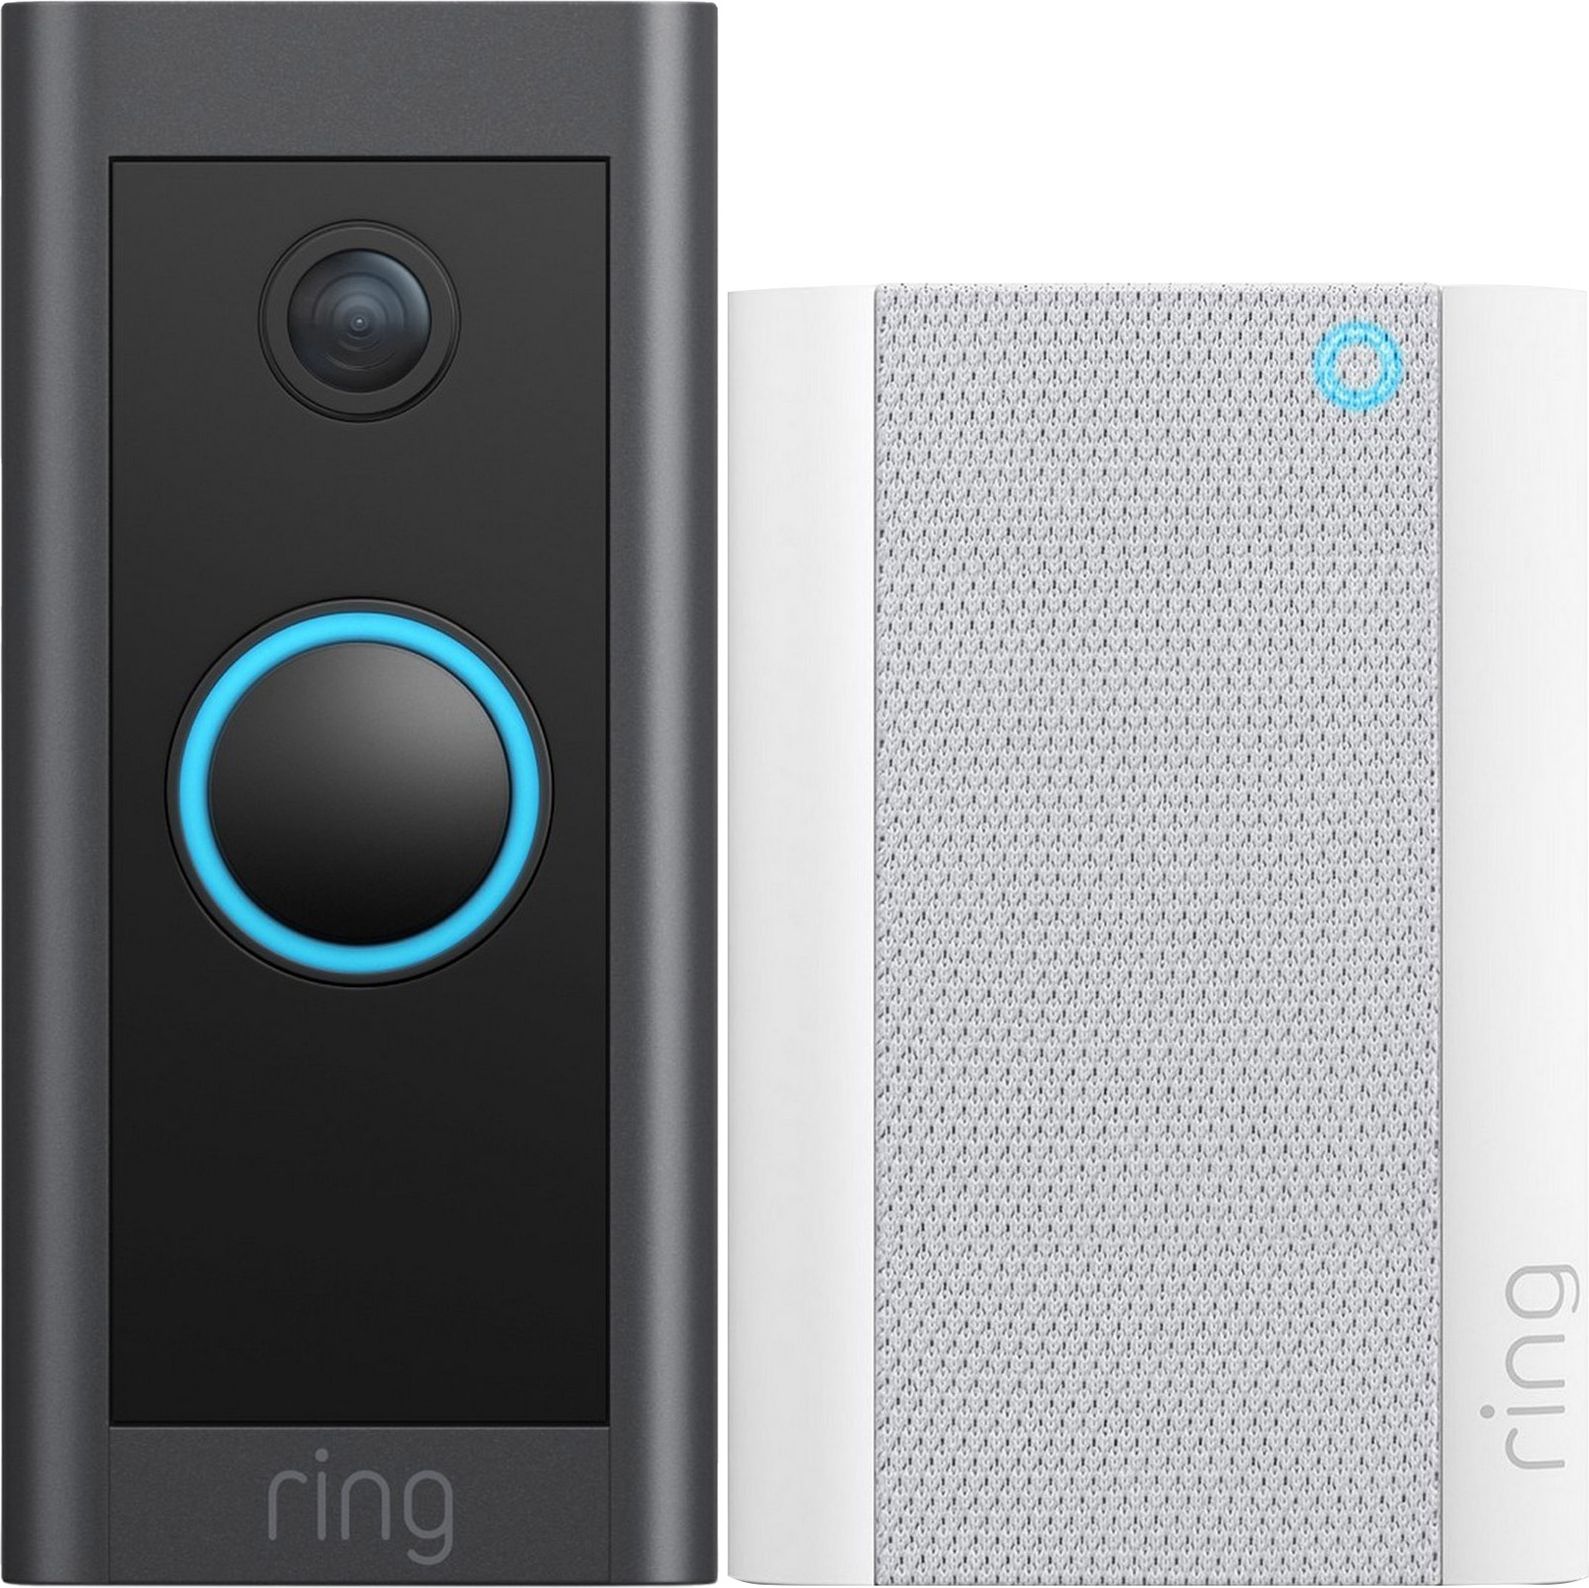 Ring Wired Doorbell Kit Smart Doorbell Full HD 1080p - Black, Black